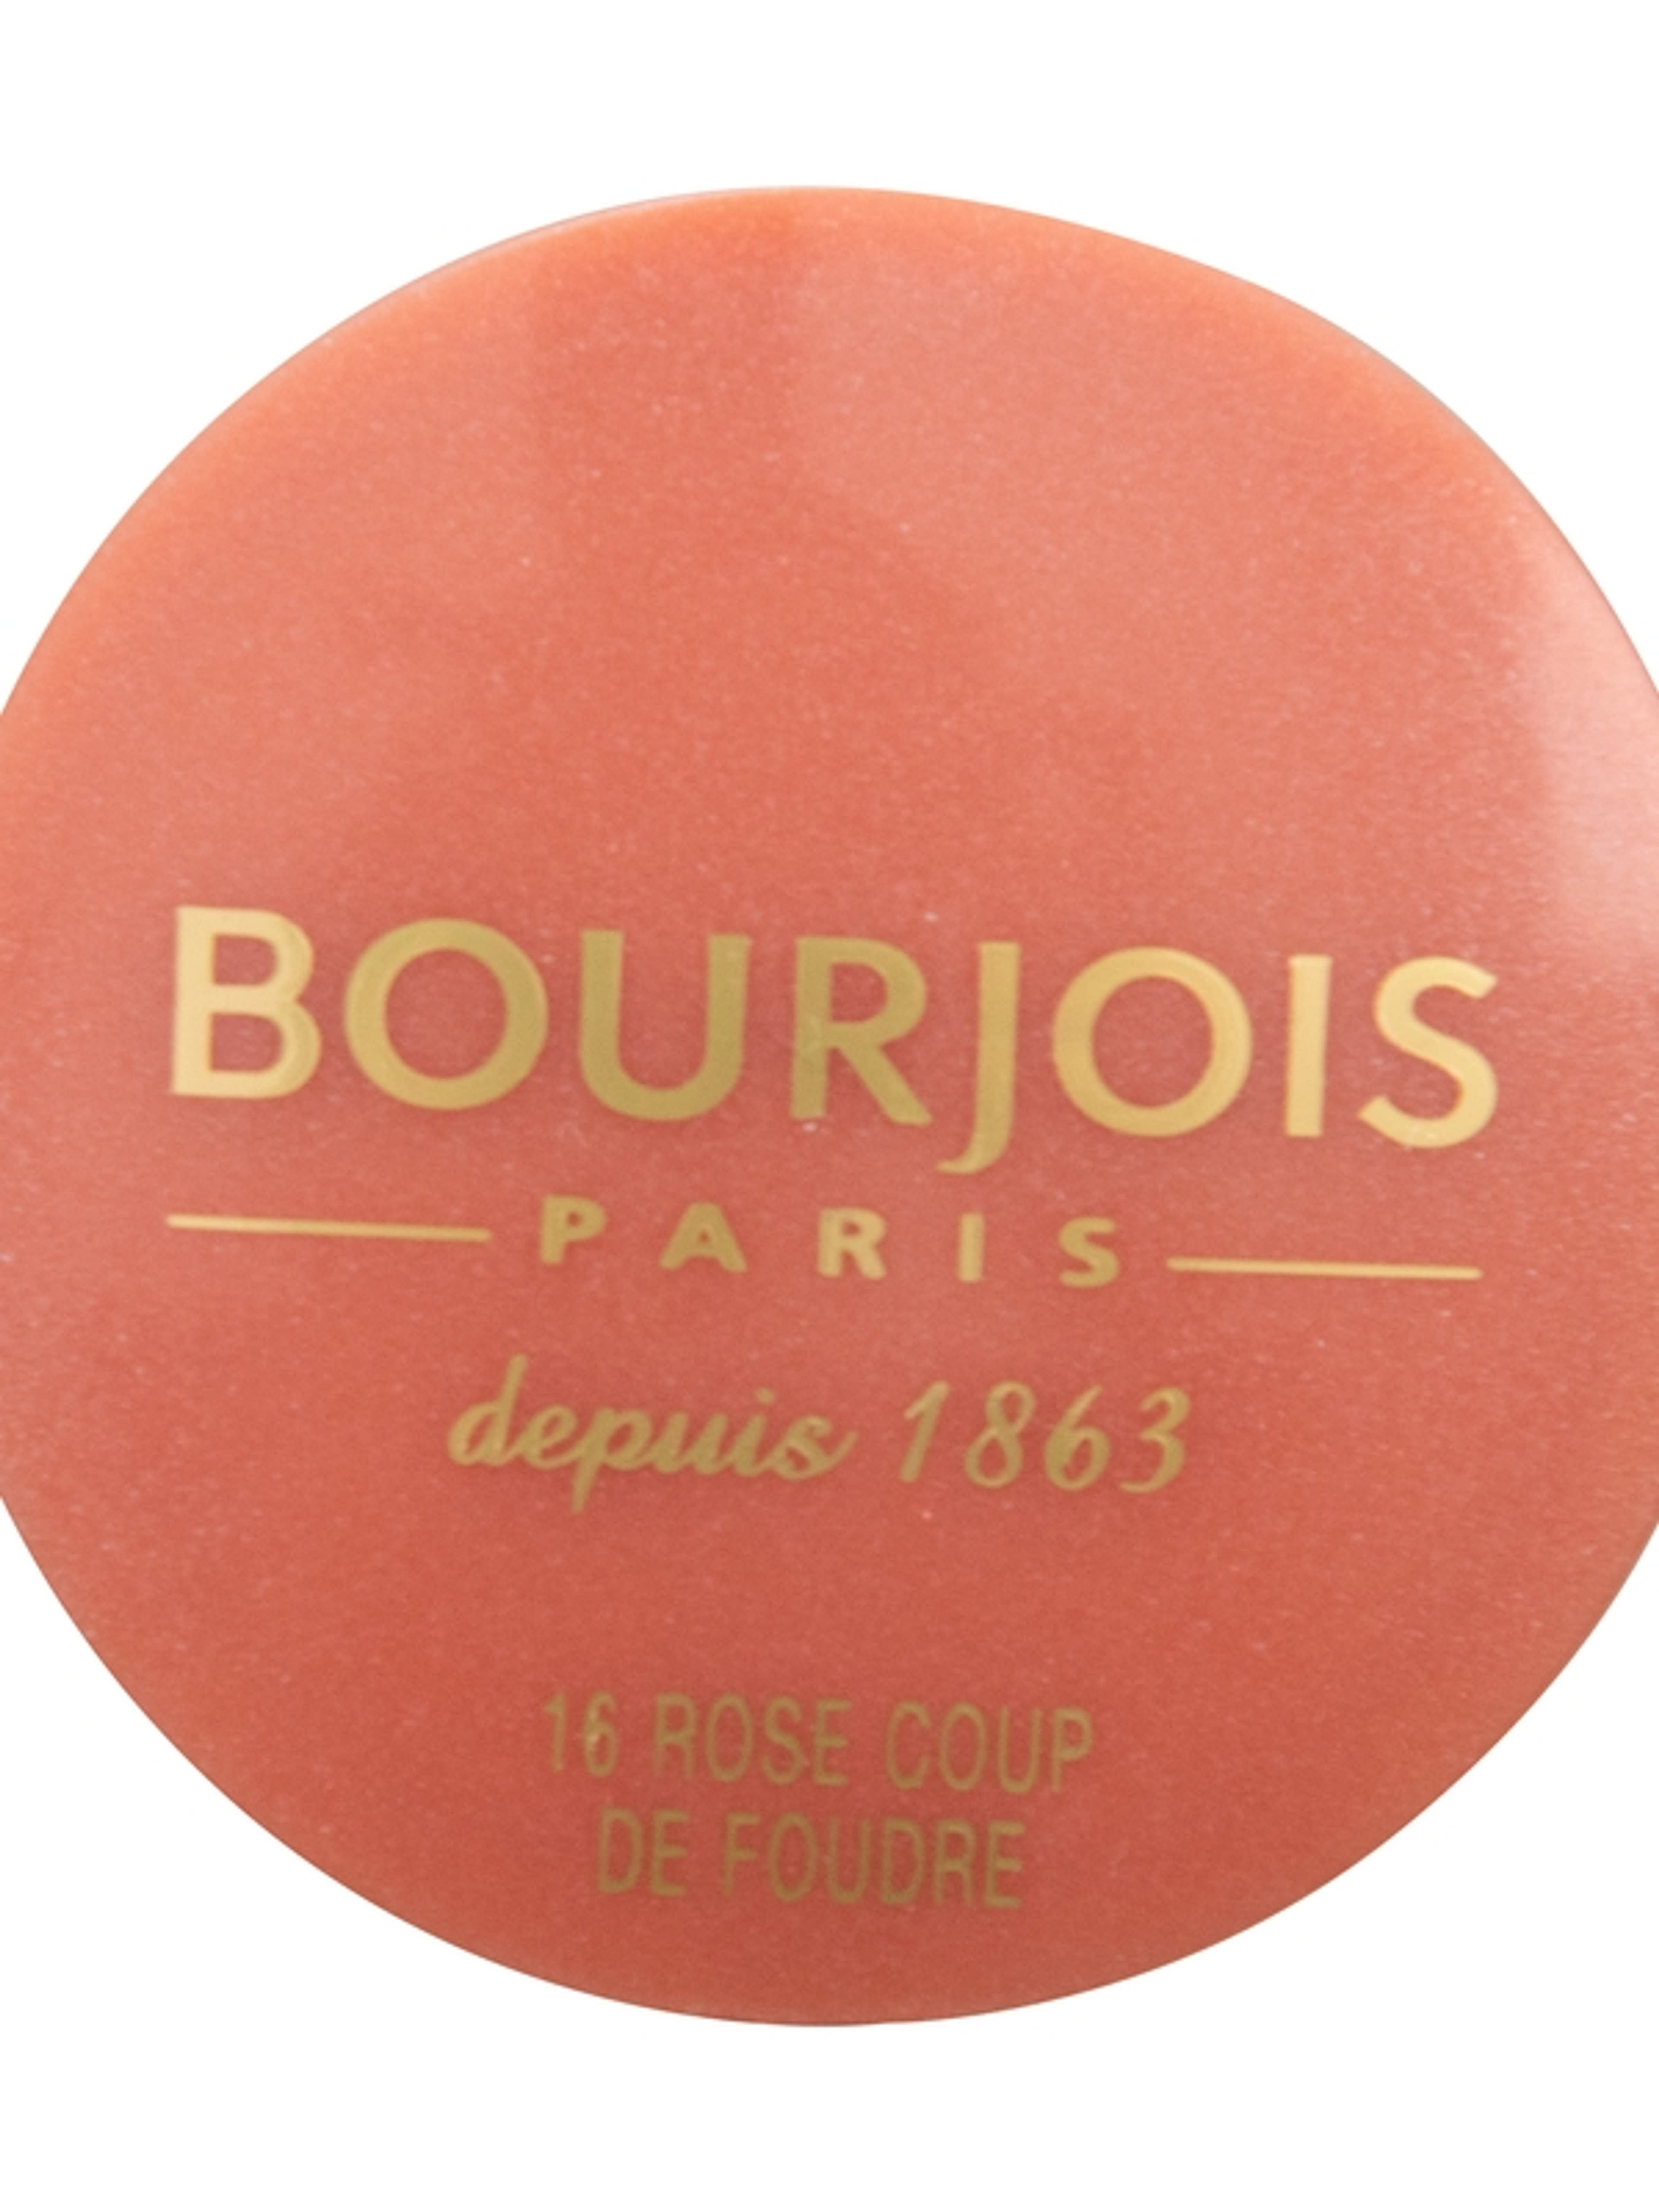 Bourjois pirosító little round pot /16 - 1 db